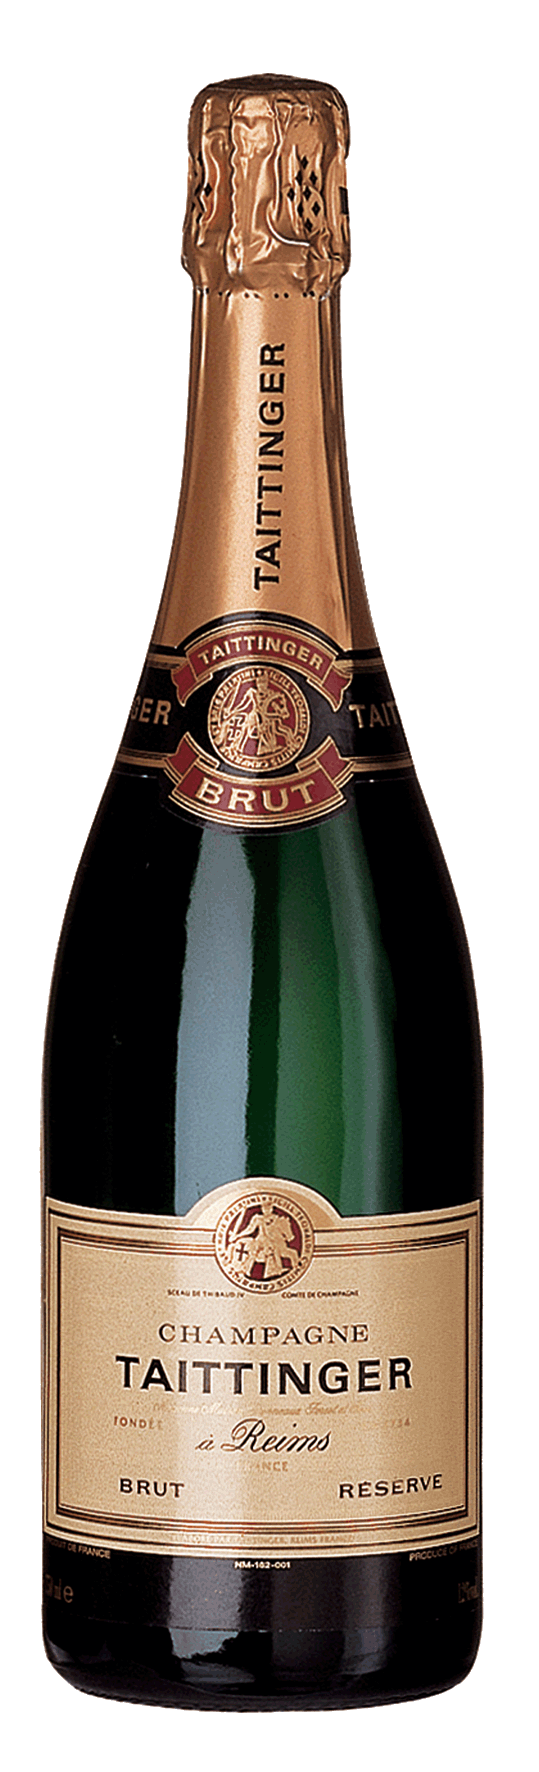 Champagner Taittinger brut Reserve Magnum